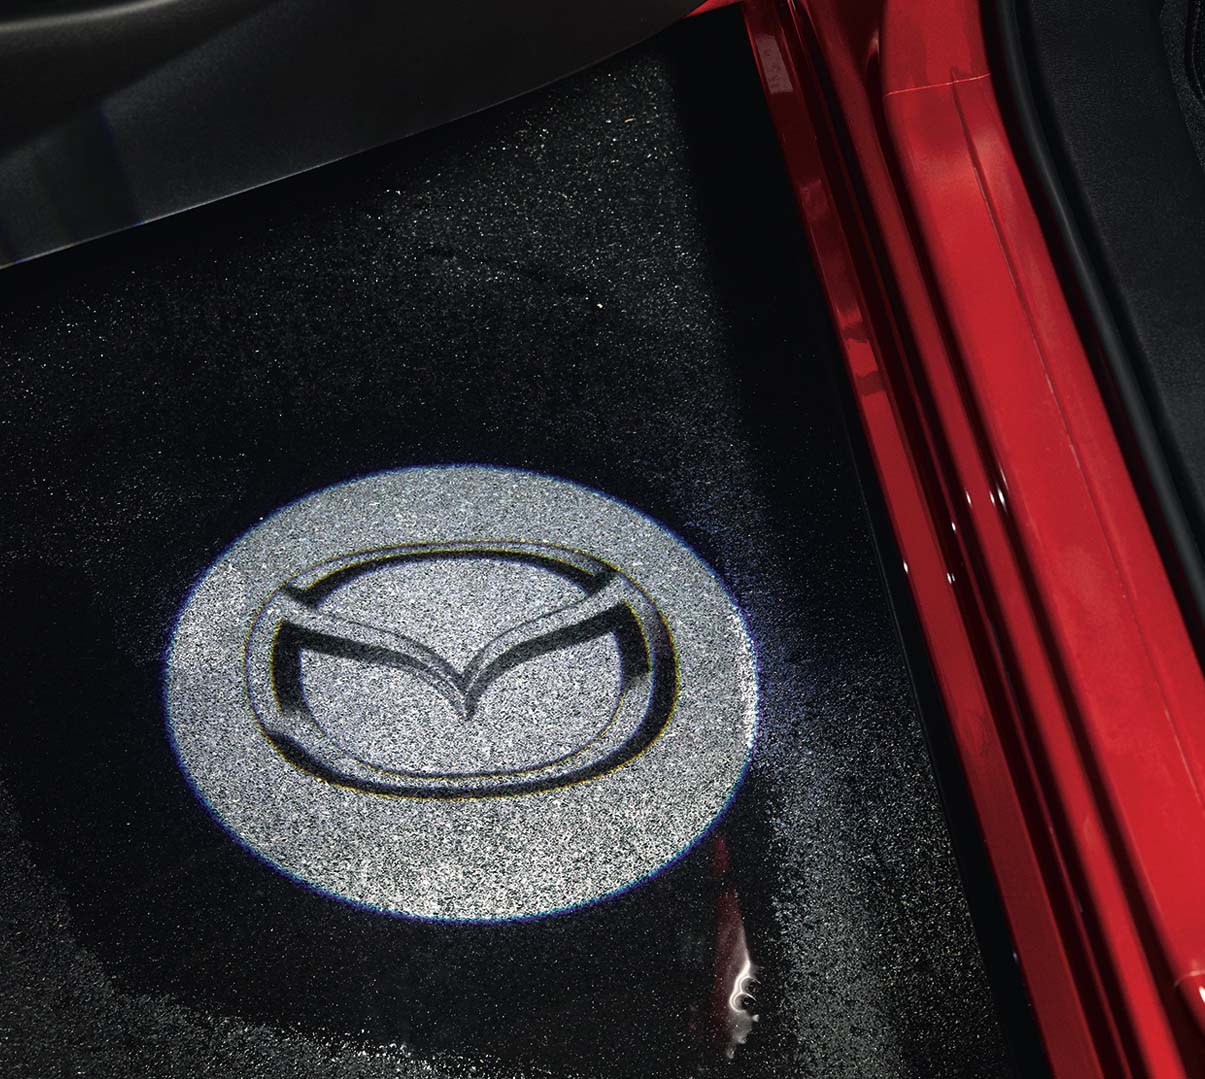 Ο προβολέας λογότυπου προβάλλει το λογότυπο της Mazda κατά την είσοδο στο Mazda CX-5.